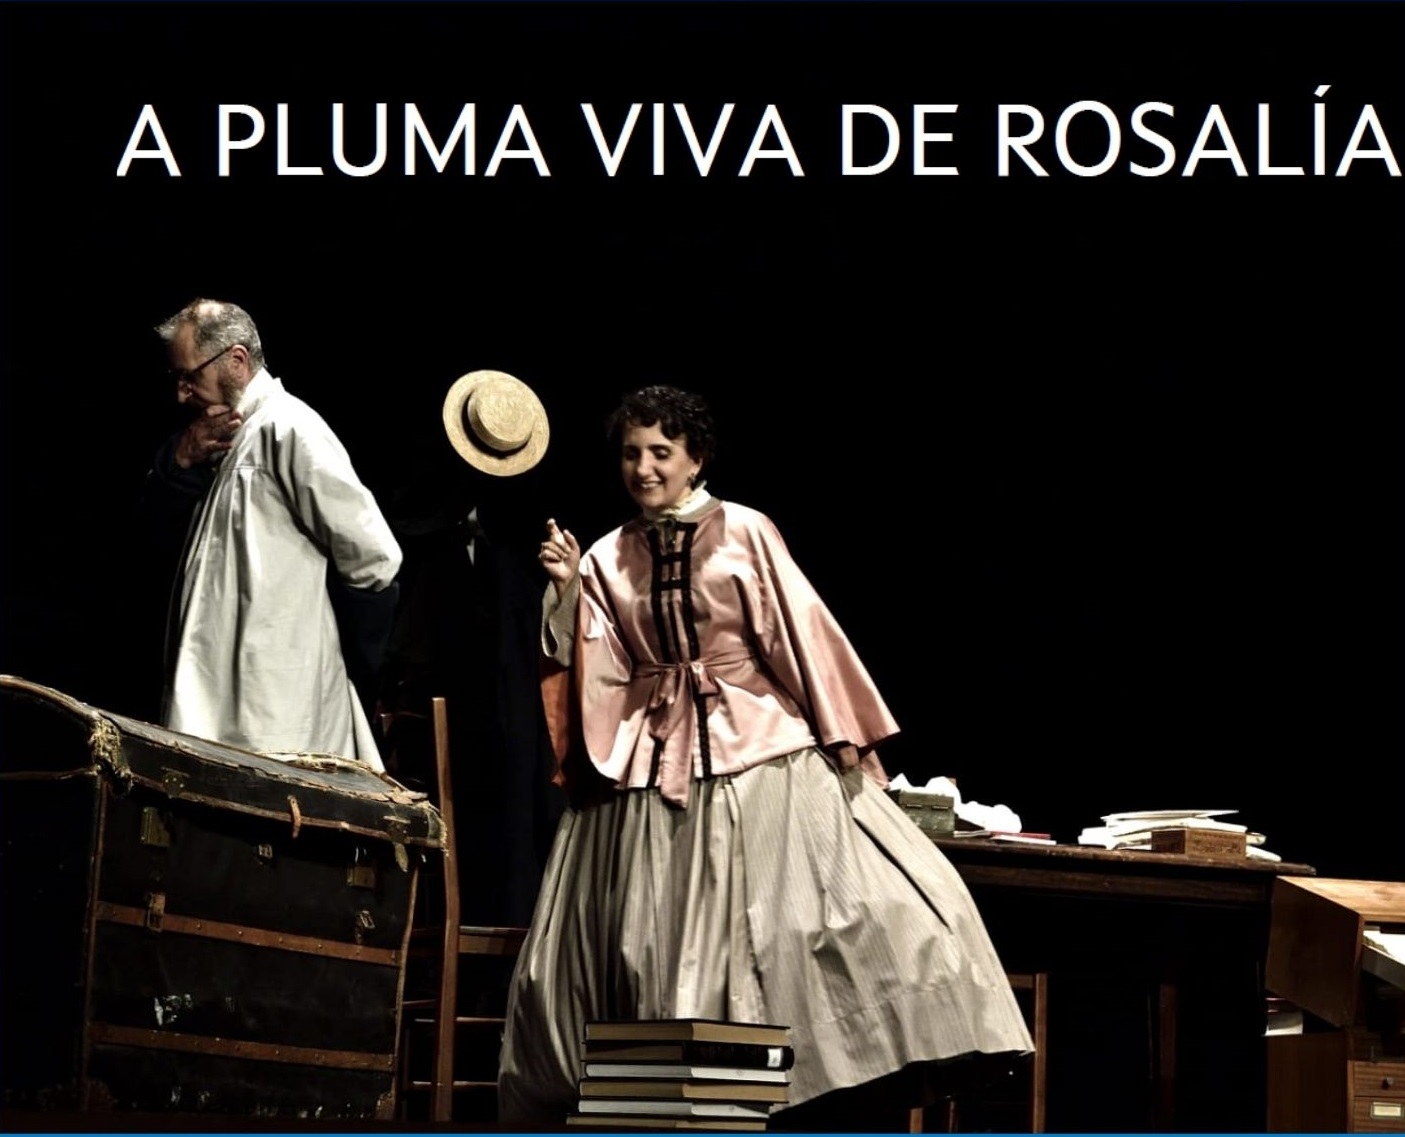 Sábado de teatro en Ames coa obra “A pluma viva de Rosalía”